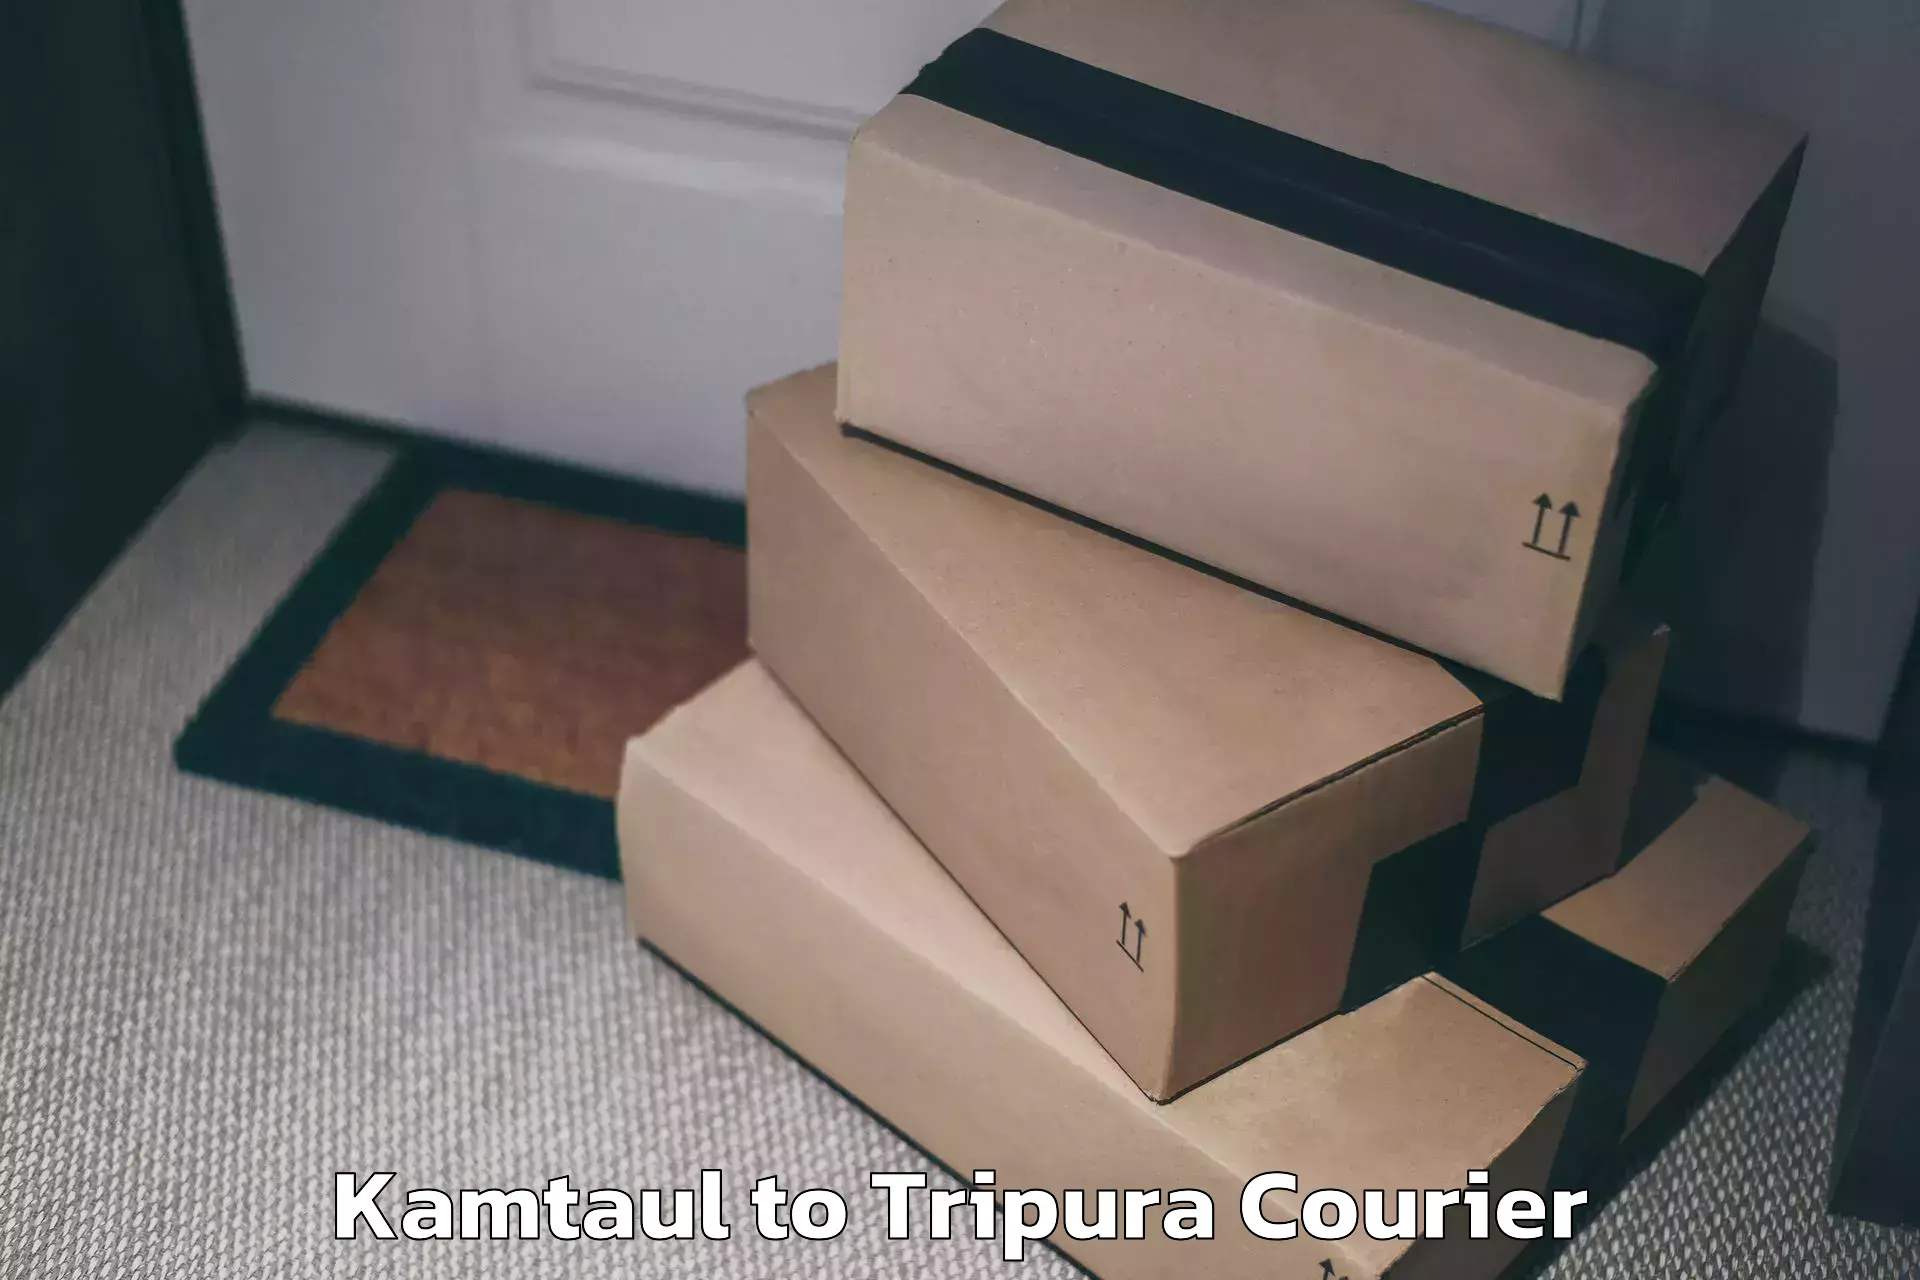 Luggage shipment tracking Kamtaul to IIIT Agartala